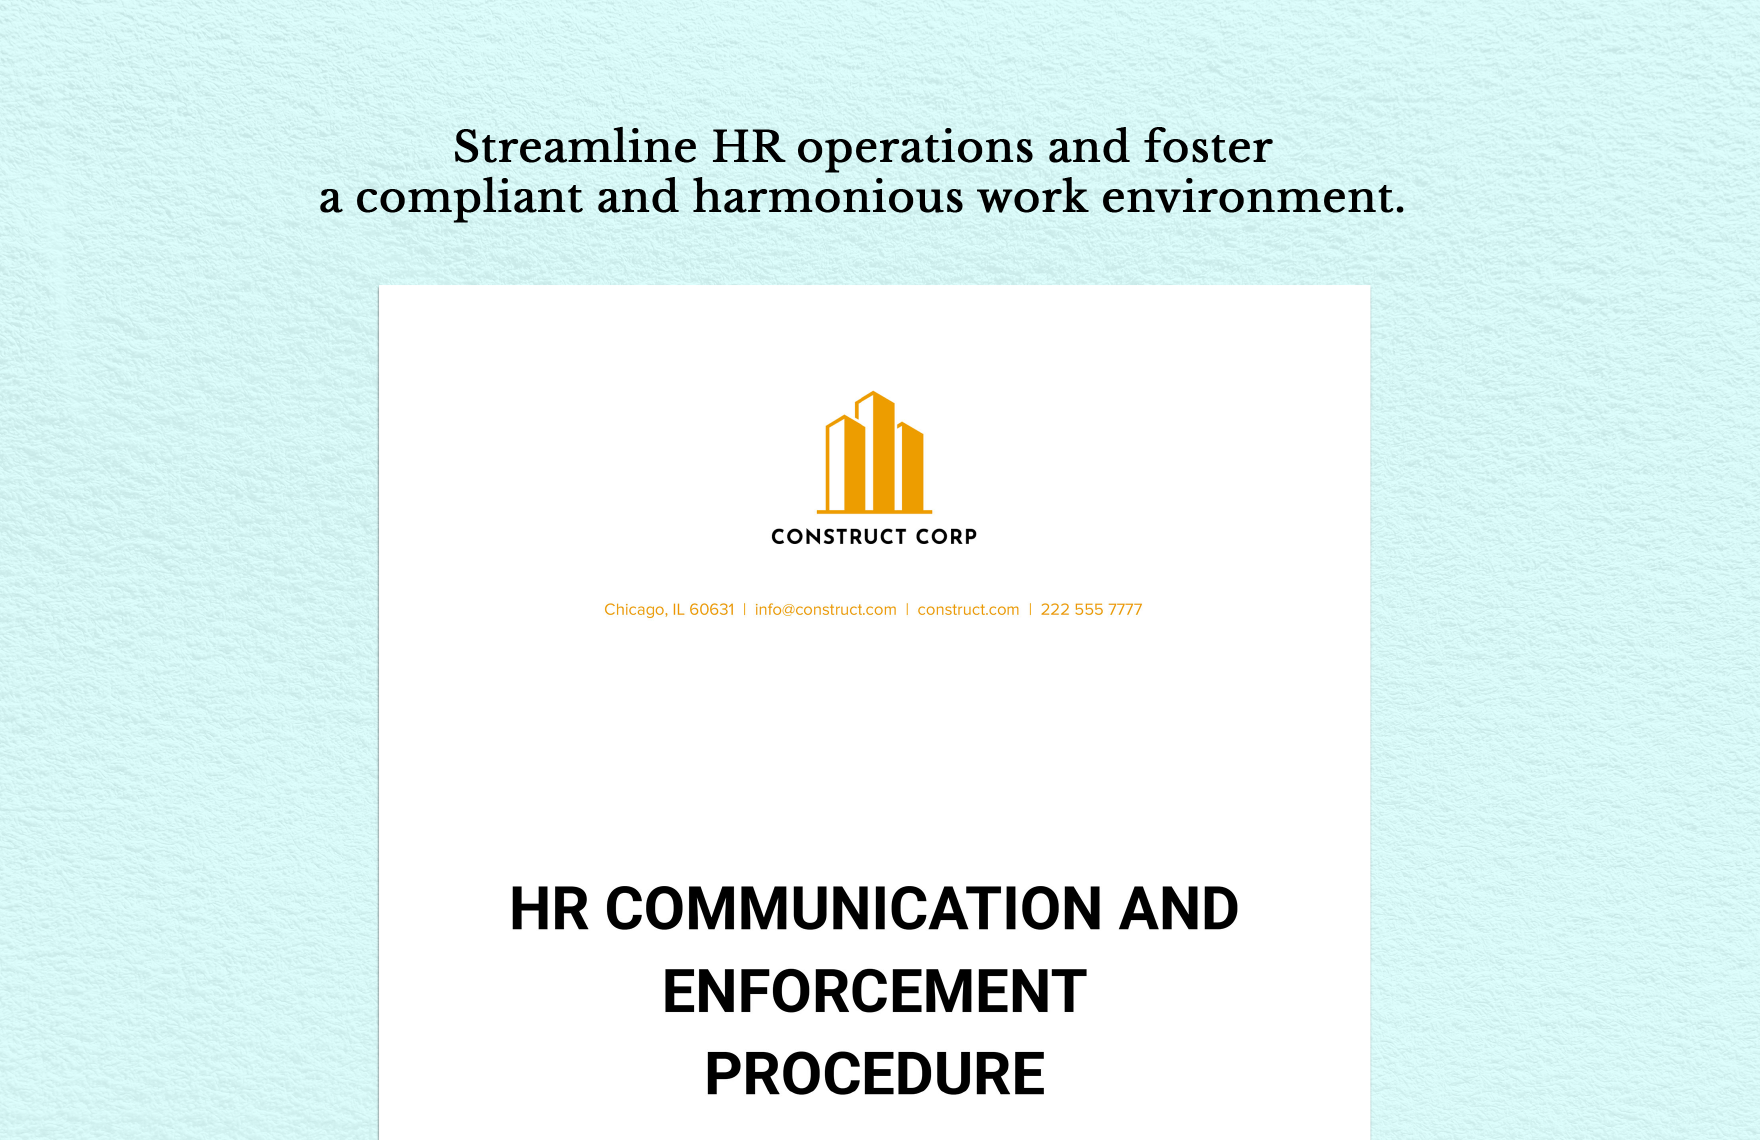 HR Communication and Enforcement Procedure